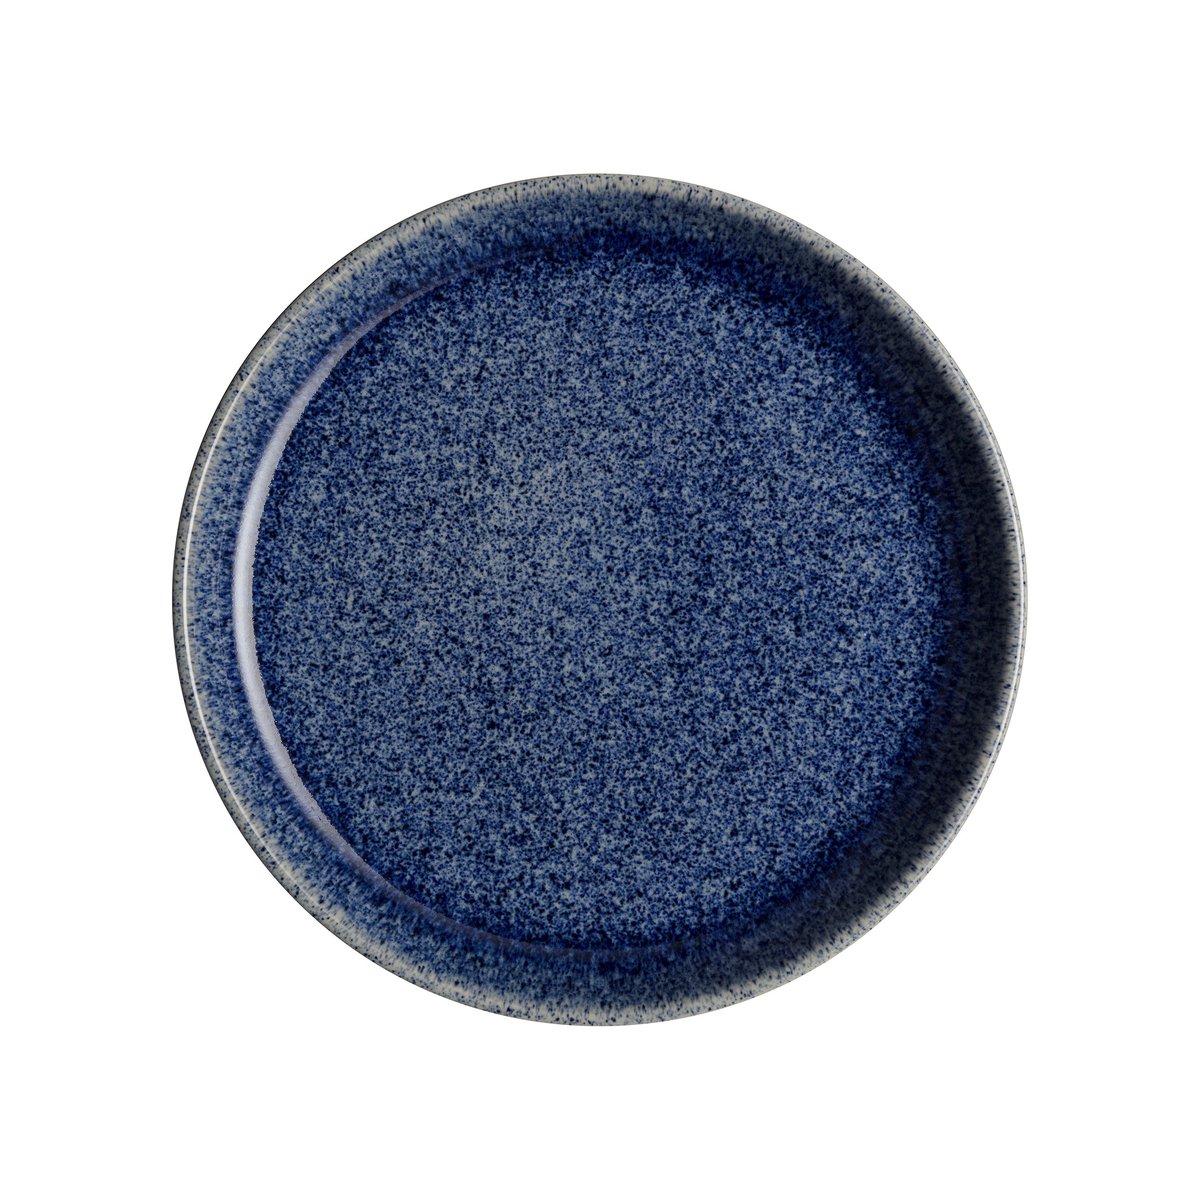 denby petite assiette studio blue 17cm cobalt